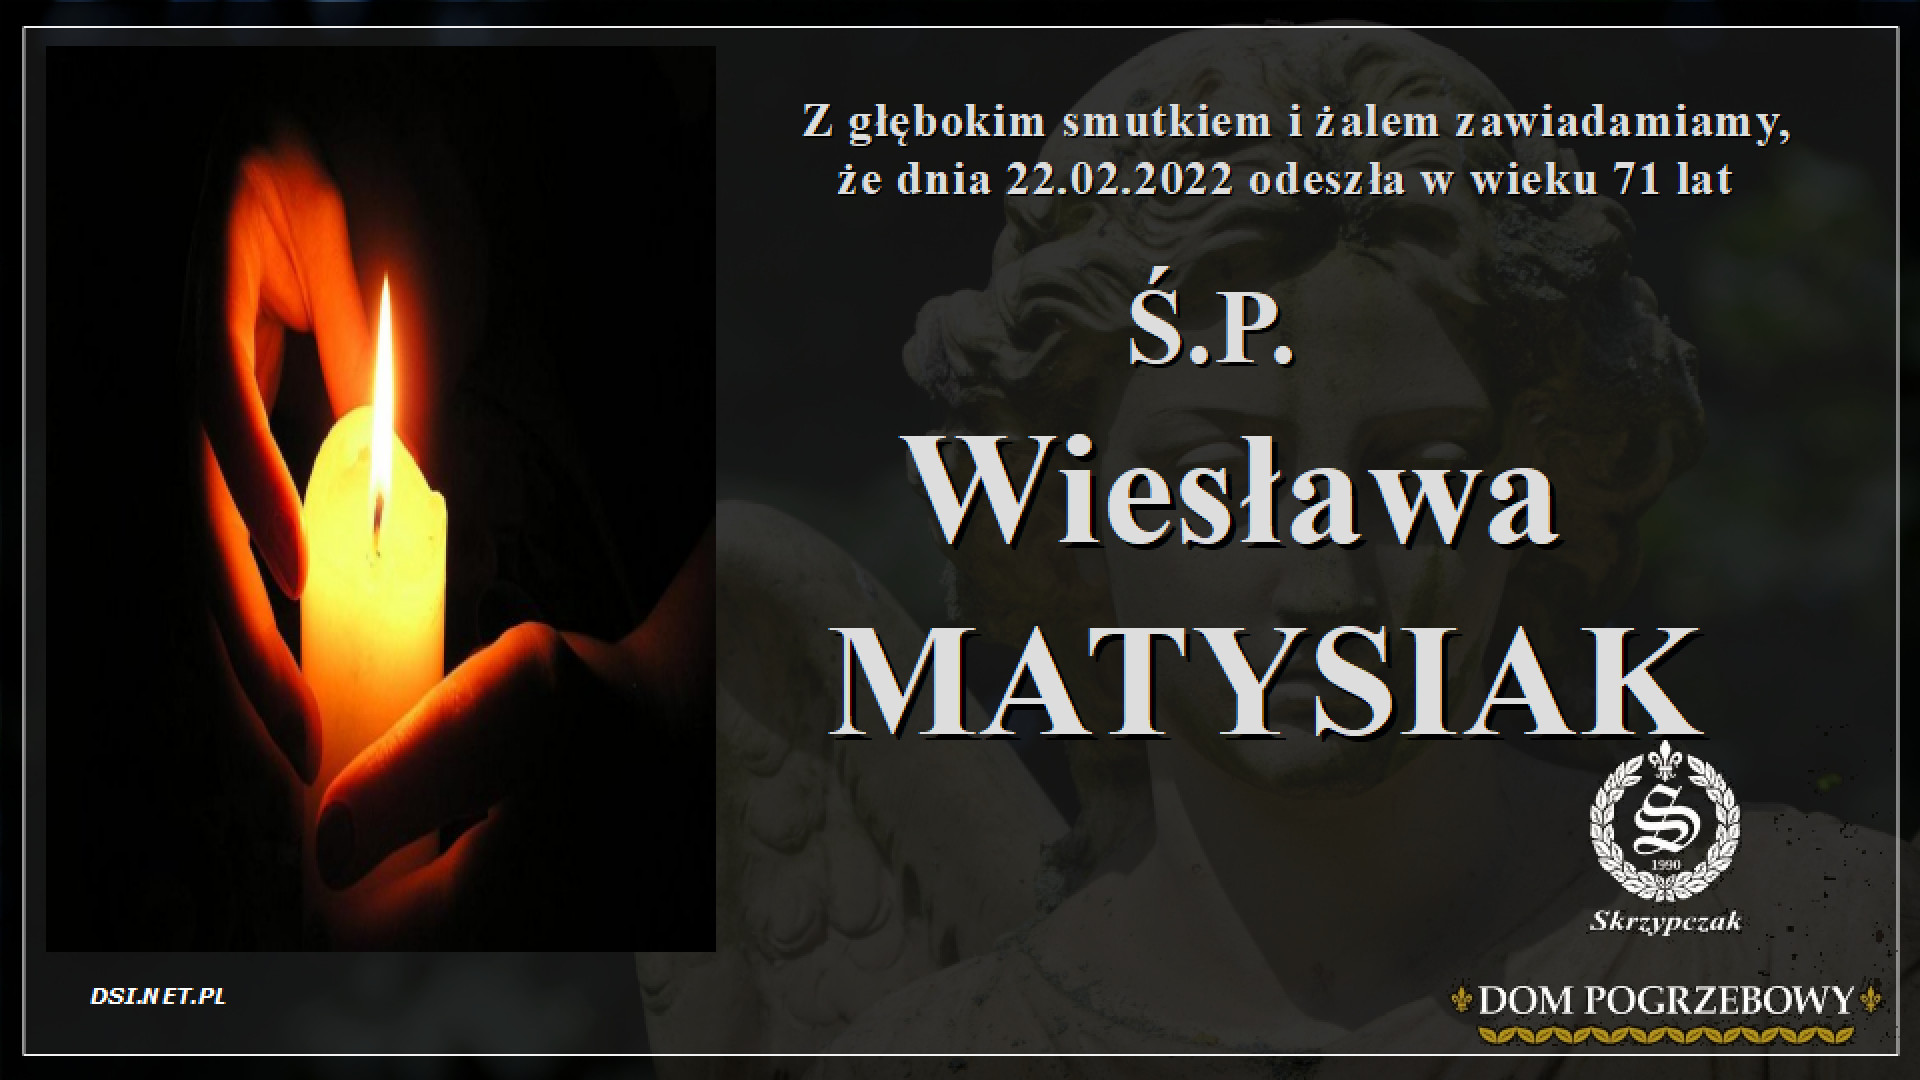 Ś.P. Wiesława Matysiak